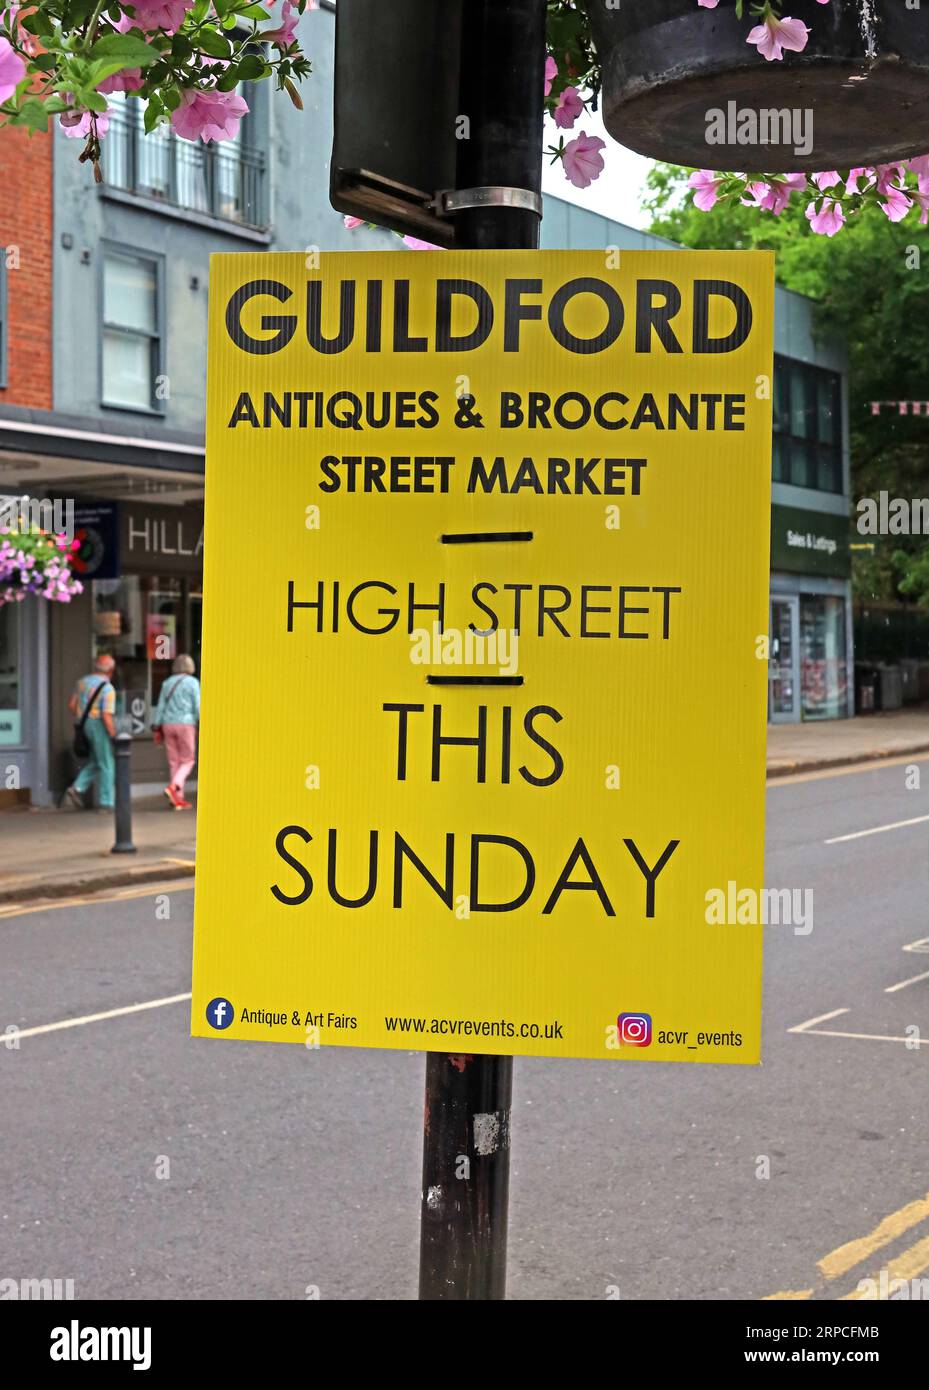 Guildford Antiques & Brocante Street Market Schild, High Street an diesem Sonntag, Surrey, England, UK, GU1 3YL Stockfoto